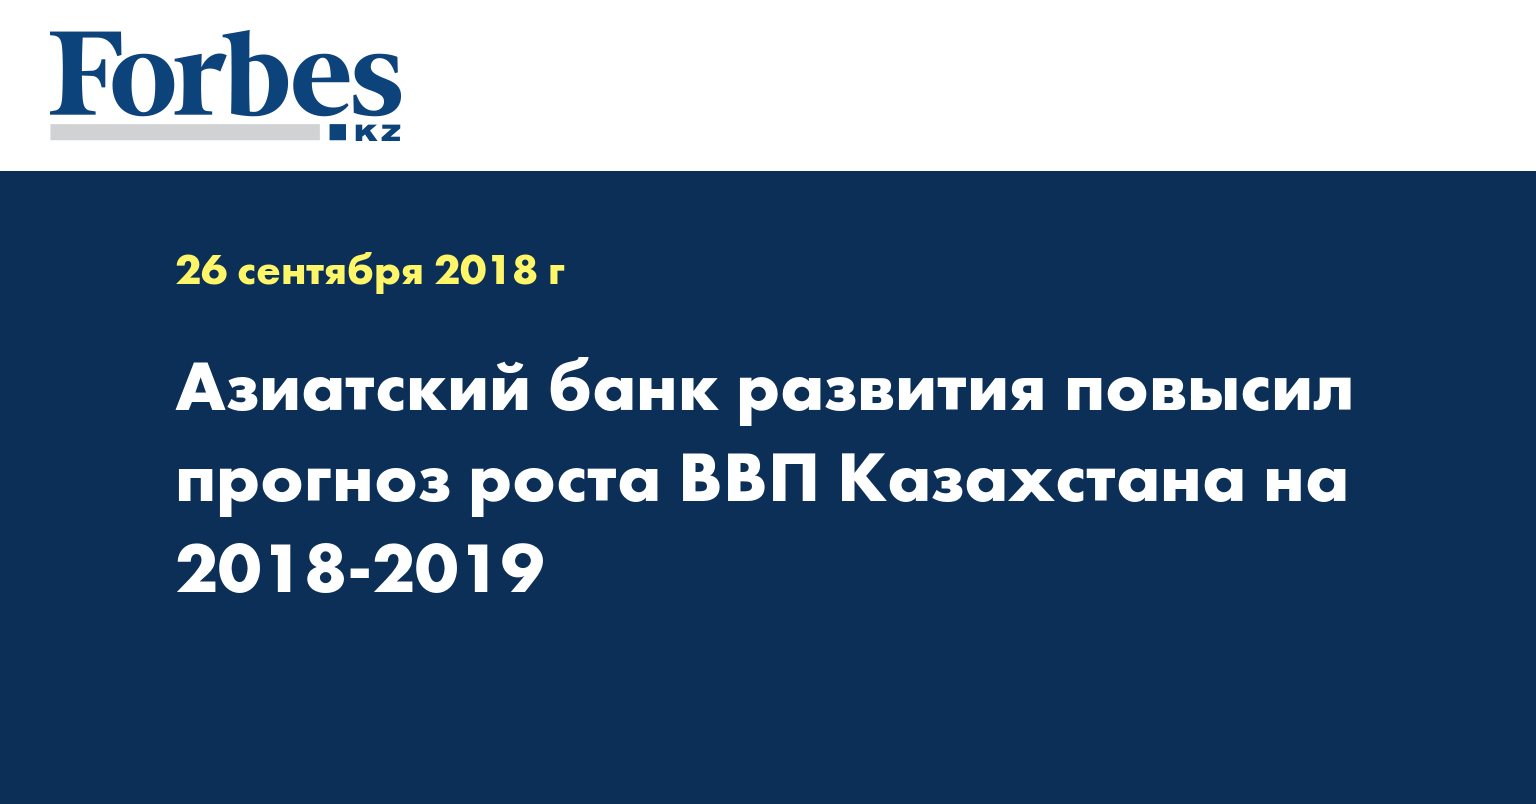 Азиатский банк развития повысил прогноз роста ВВП Казахстана на 2018-2019